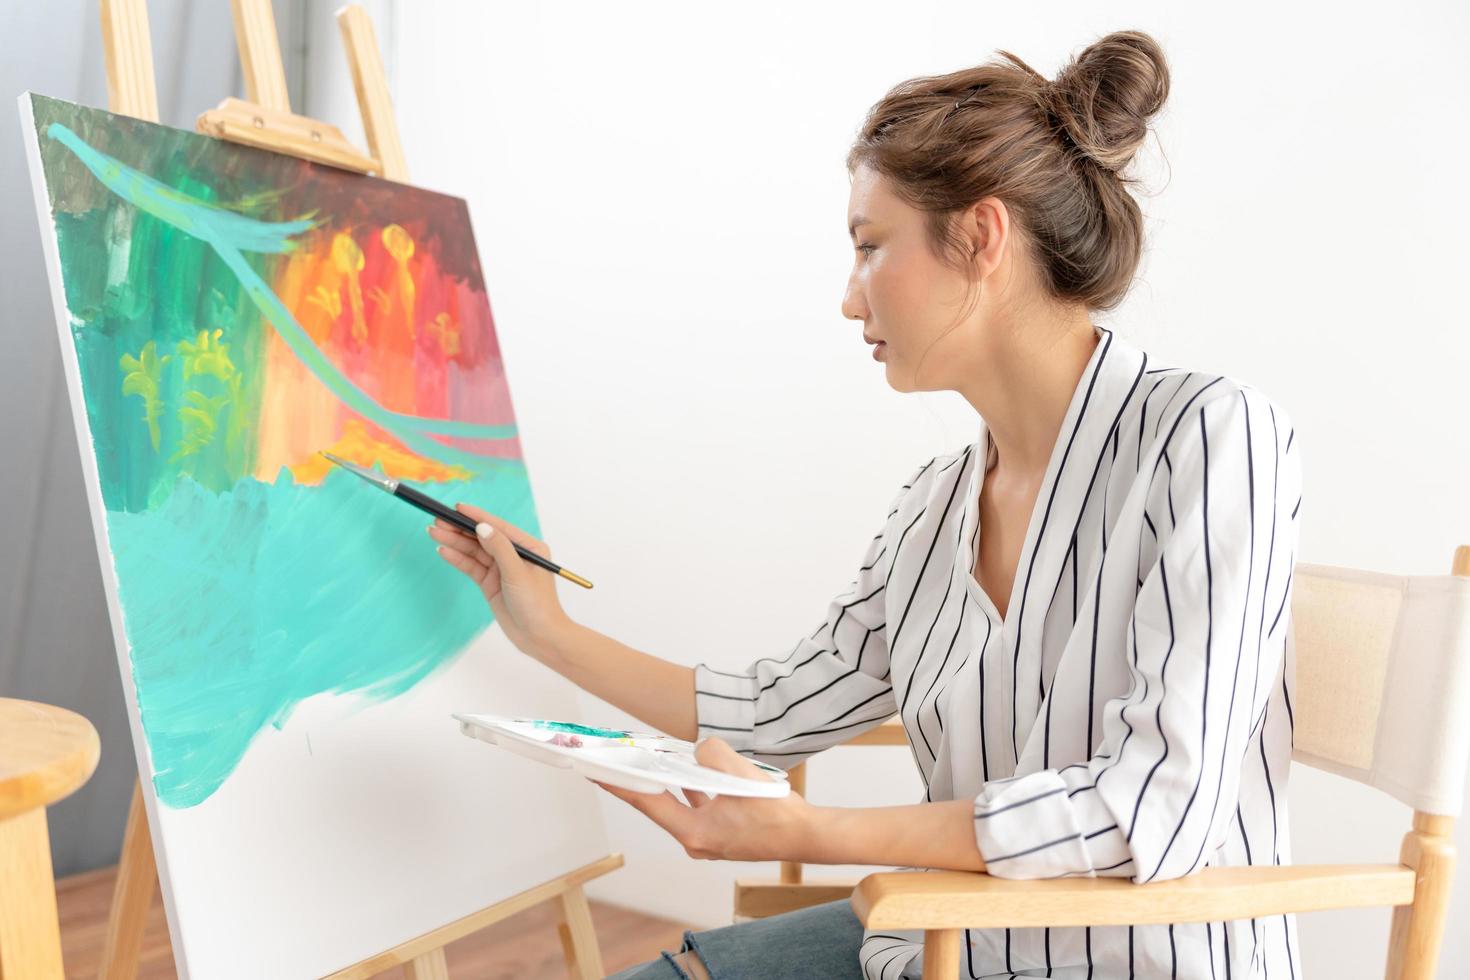 professionell kvinna konstnär flicka använda sig av paintbrush i abstrakt konst för skapa mästerverk. målare måla med akvareller eller olja i studio hus. skön kvinna njut av målning som hobby. arbete rekreation foto